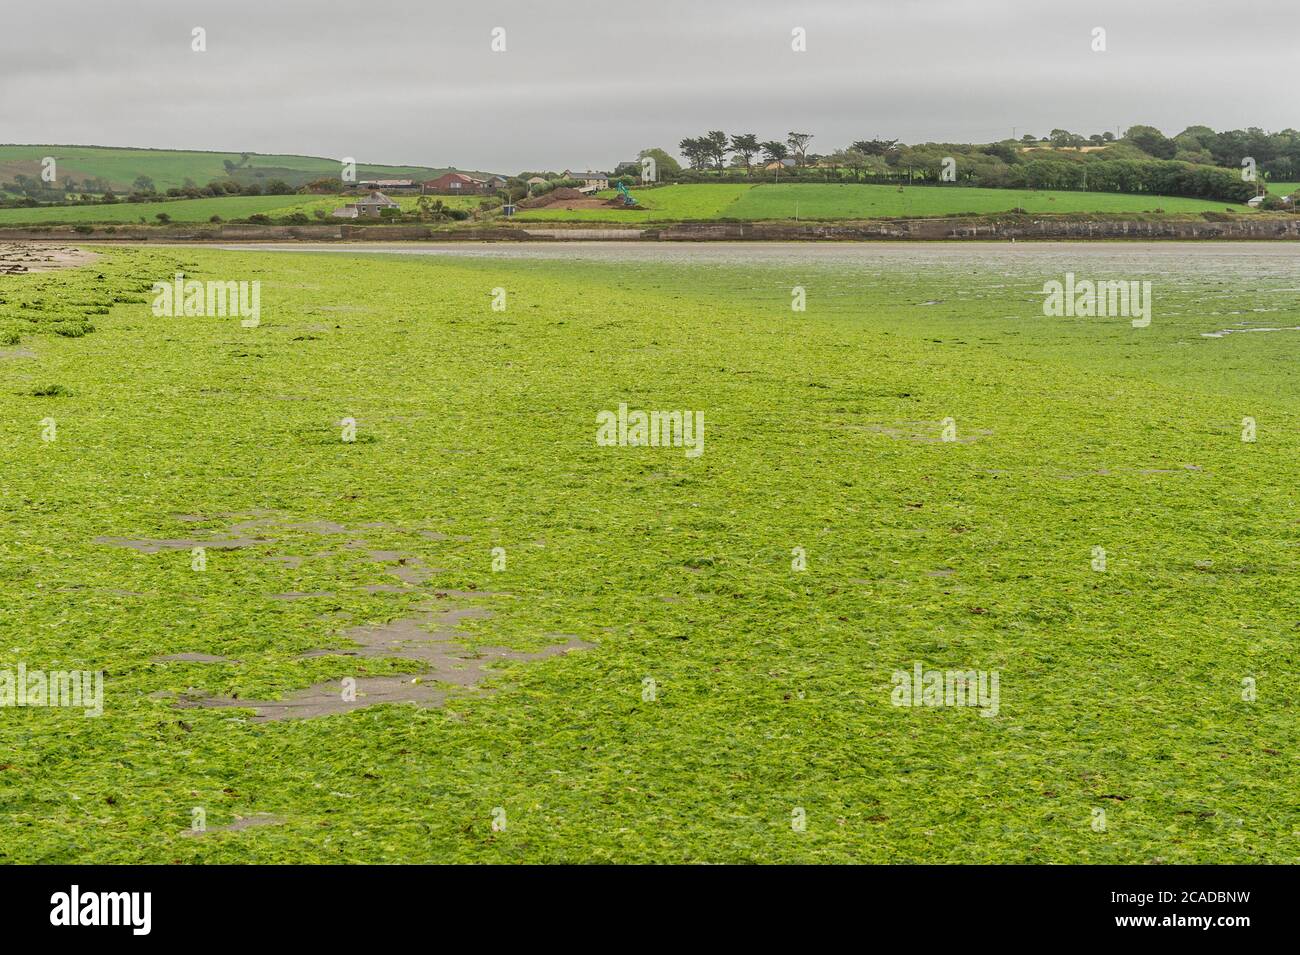 Hafenblick, West Cork, Irland. August 2020. Am Harbour View Beach und an anderen Stränden in West Cork wurden Tonnen von grünen Algen gespült. Die Algen, auch bekannt als "Seesalat", werden verursacht, wenn menschliche Abfälle ins Meer fließen und Wachstum verursachen. Quelle: AG News/Alamy Live News Stockfoto